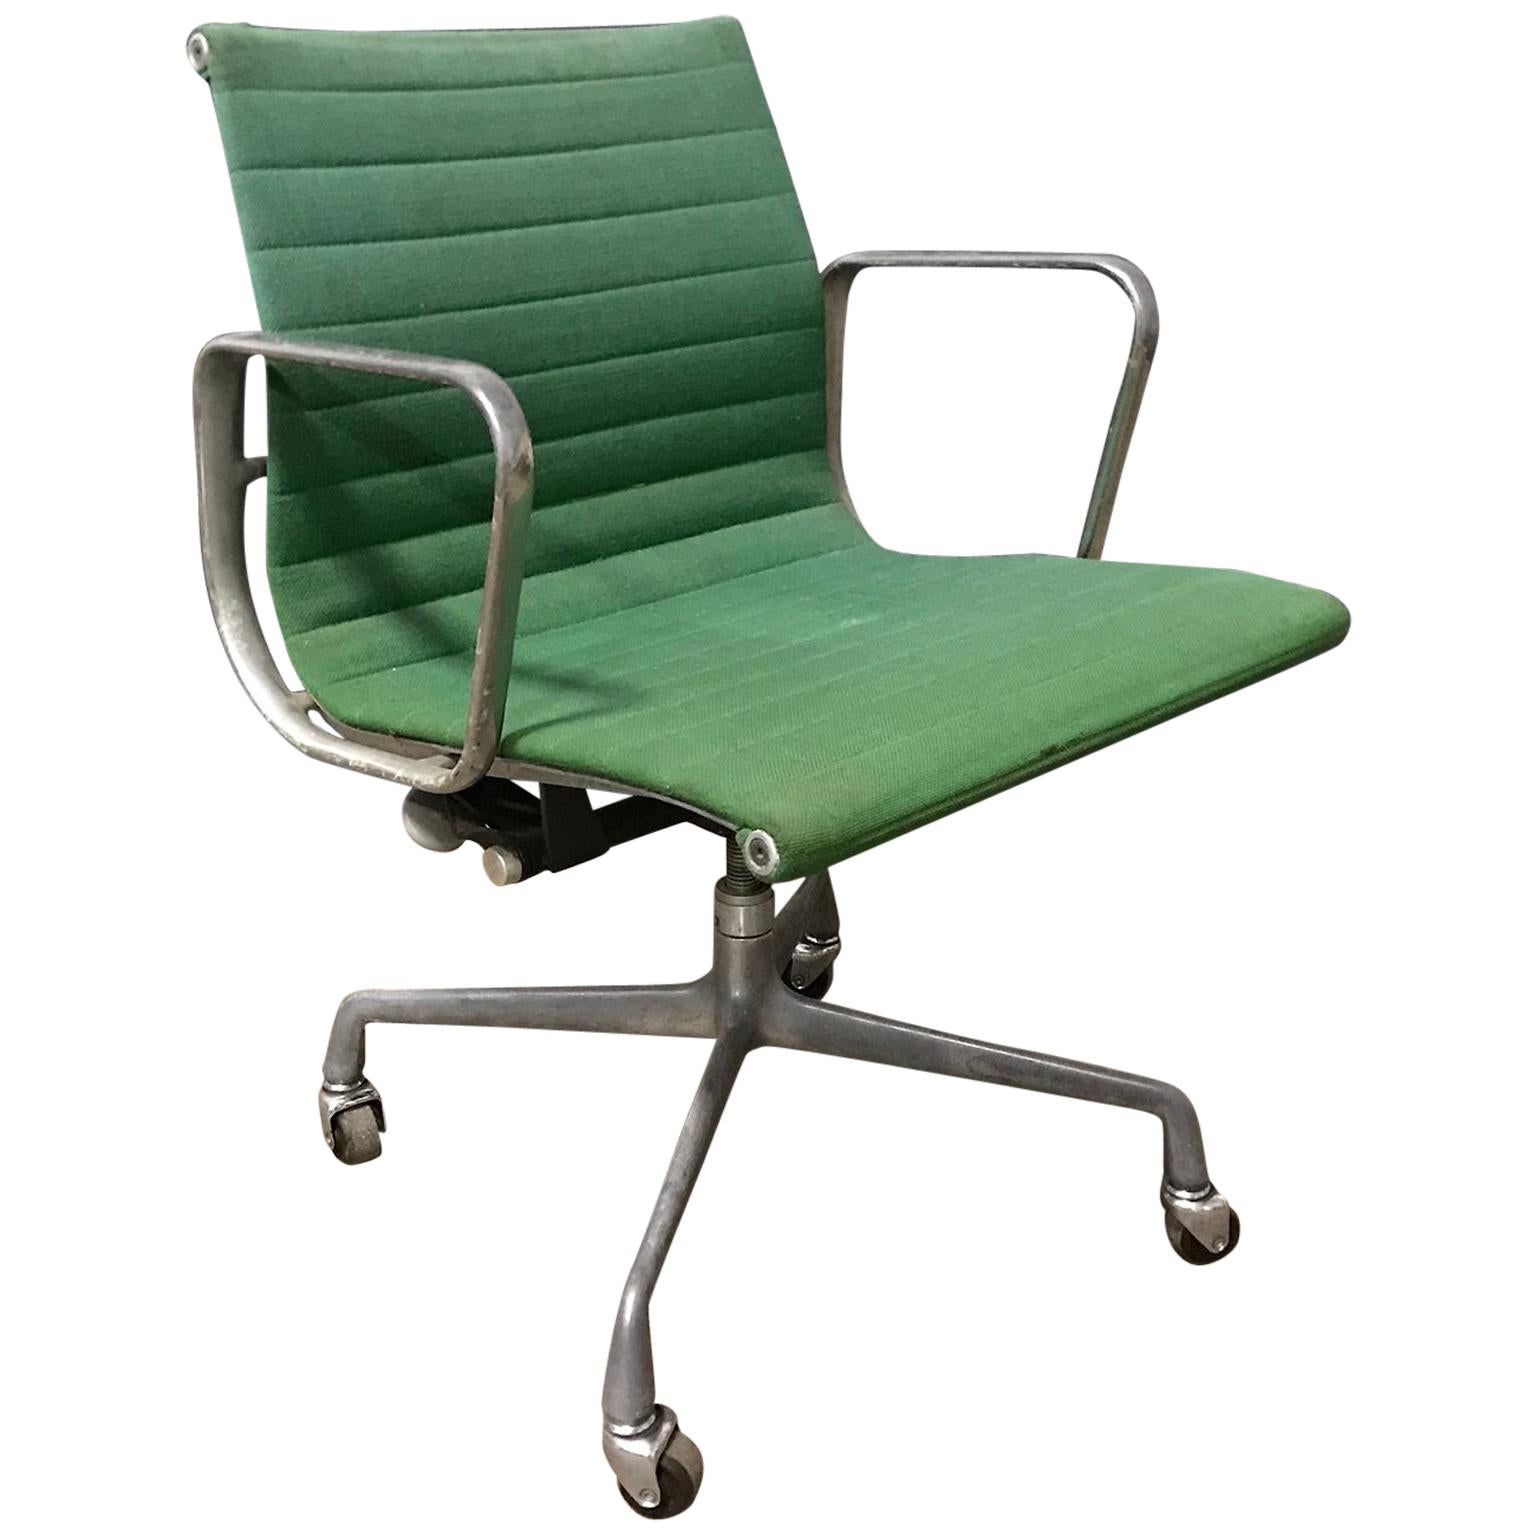 Ray & Charles Eames für Herman Miller Full Option Seltener grüner Schreibtischstuhl, 1958